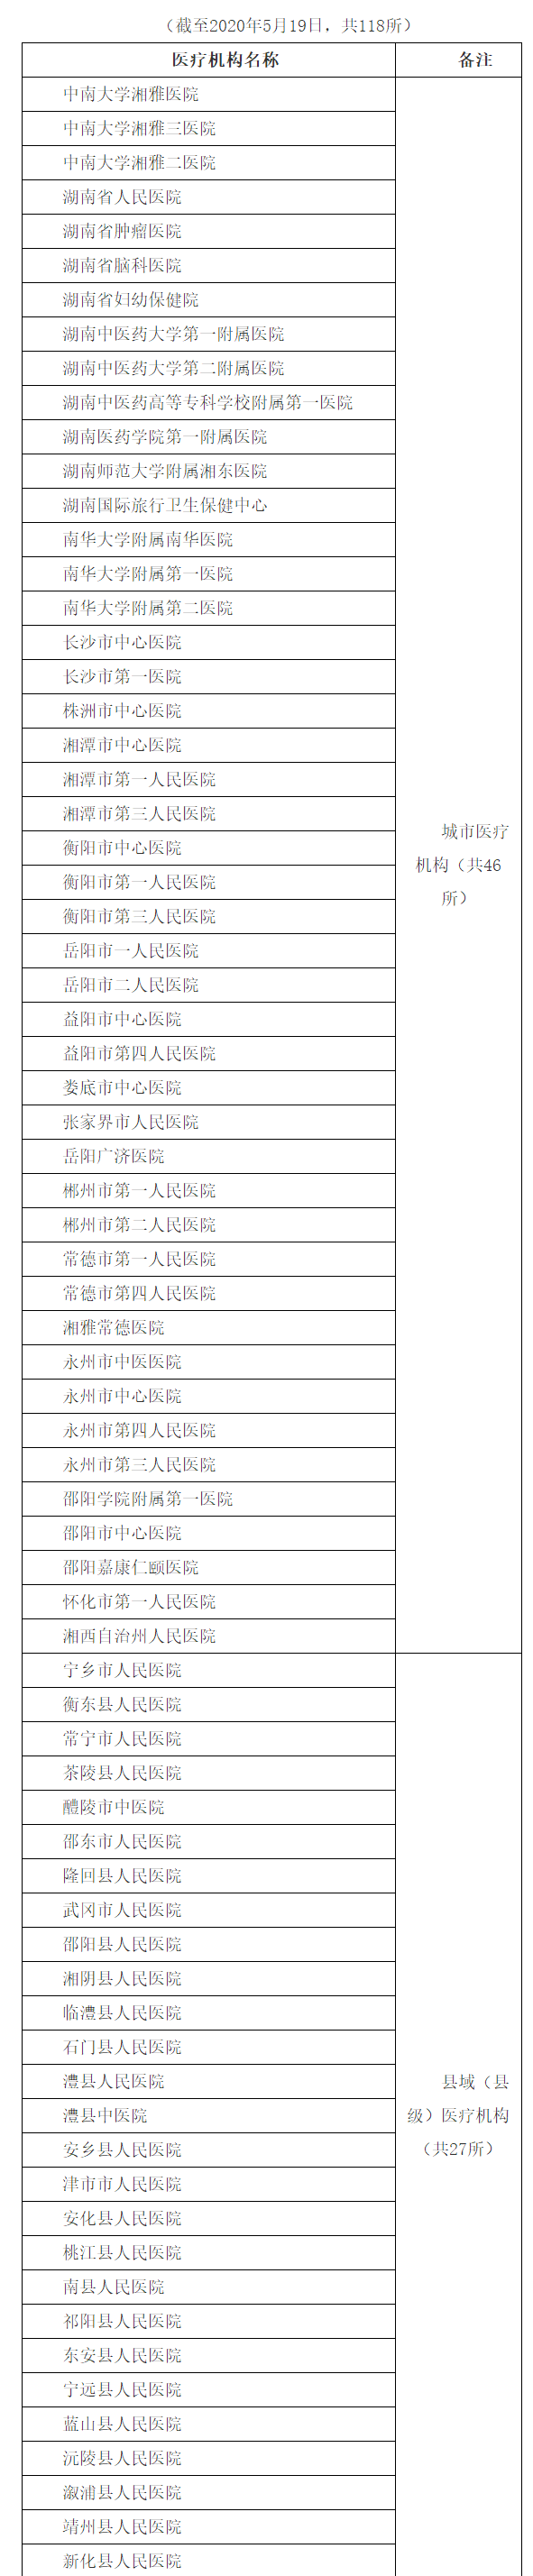 湖南省开展新冠病毒核酸检测的医疗卫生机构名单 - 湖南省卫生健康委员会(2).png